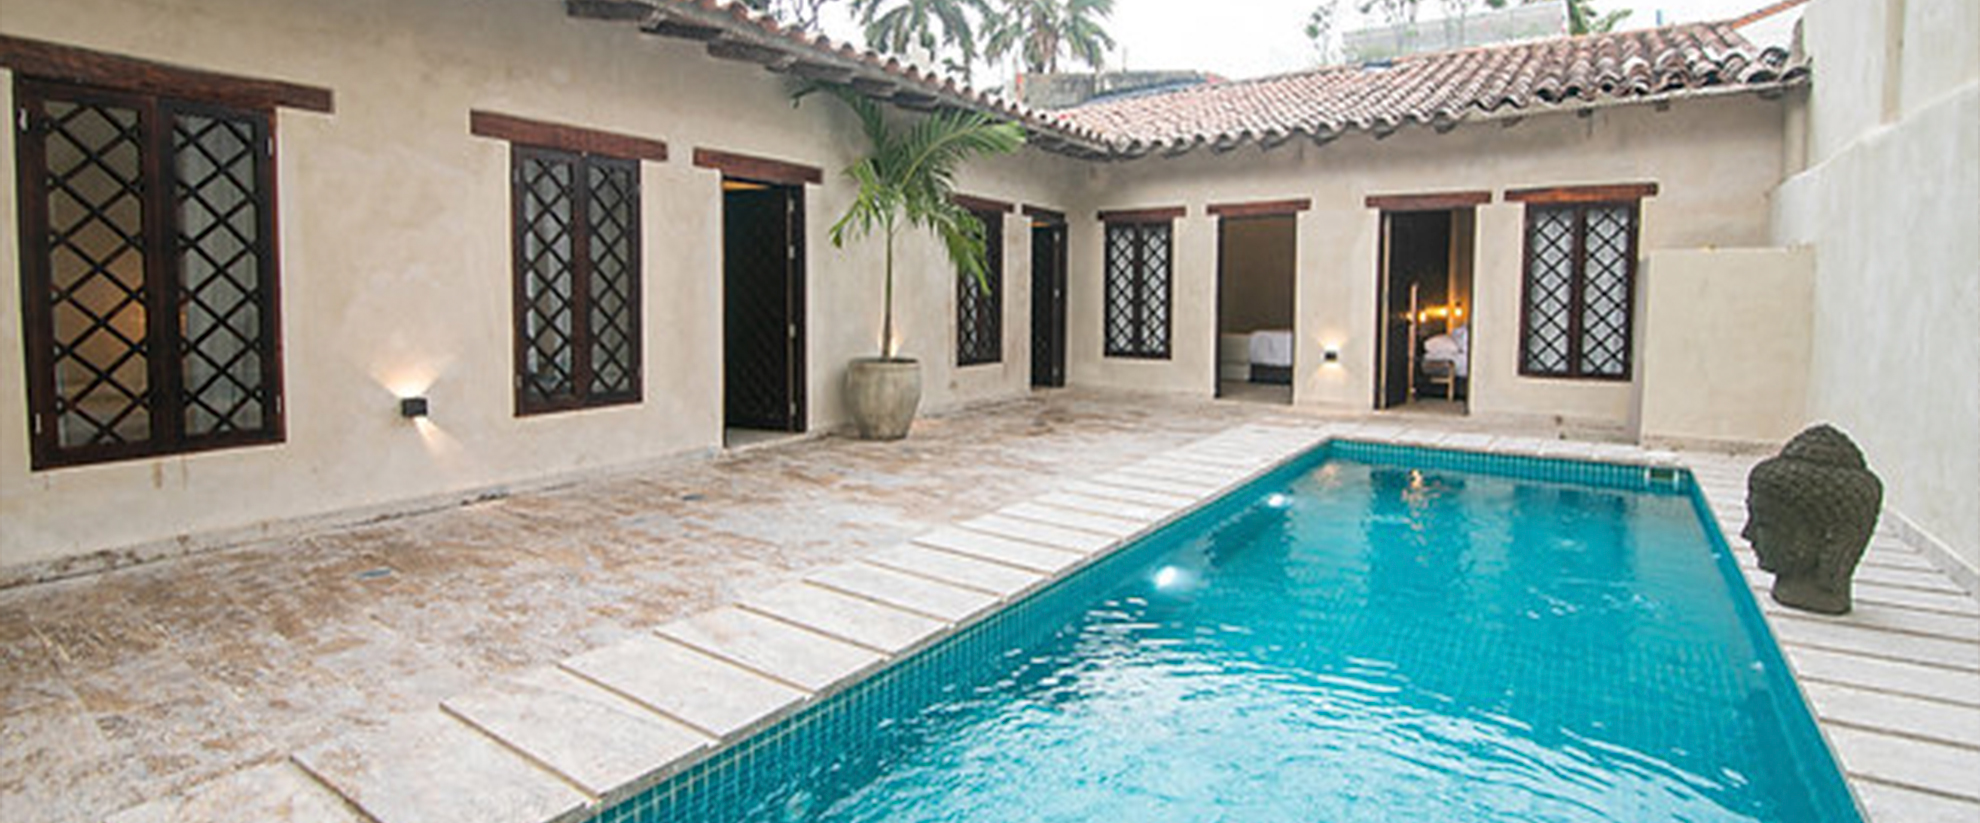 Lavish House - Classy Cartagena